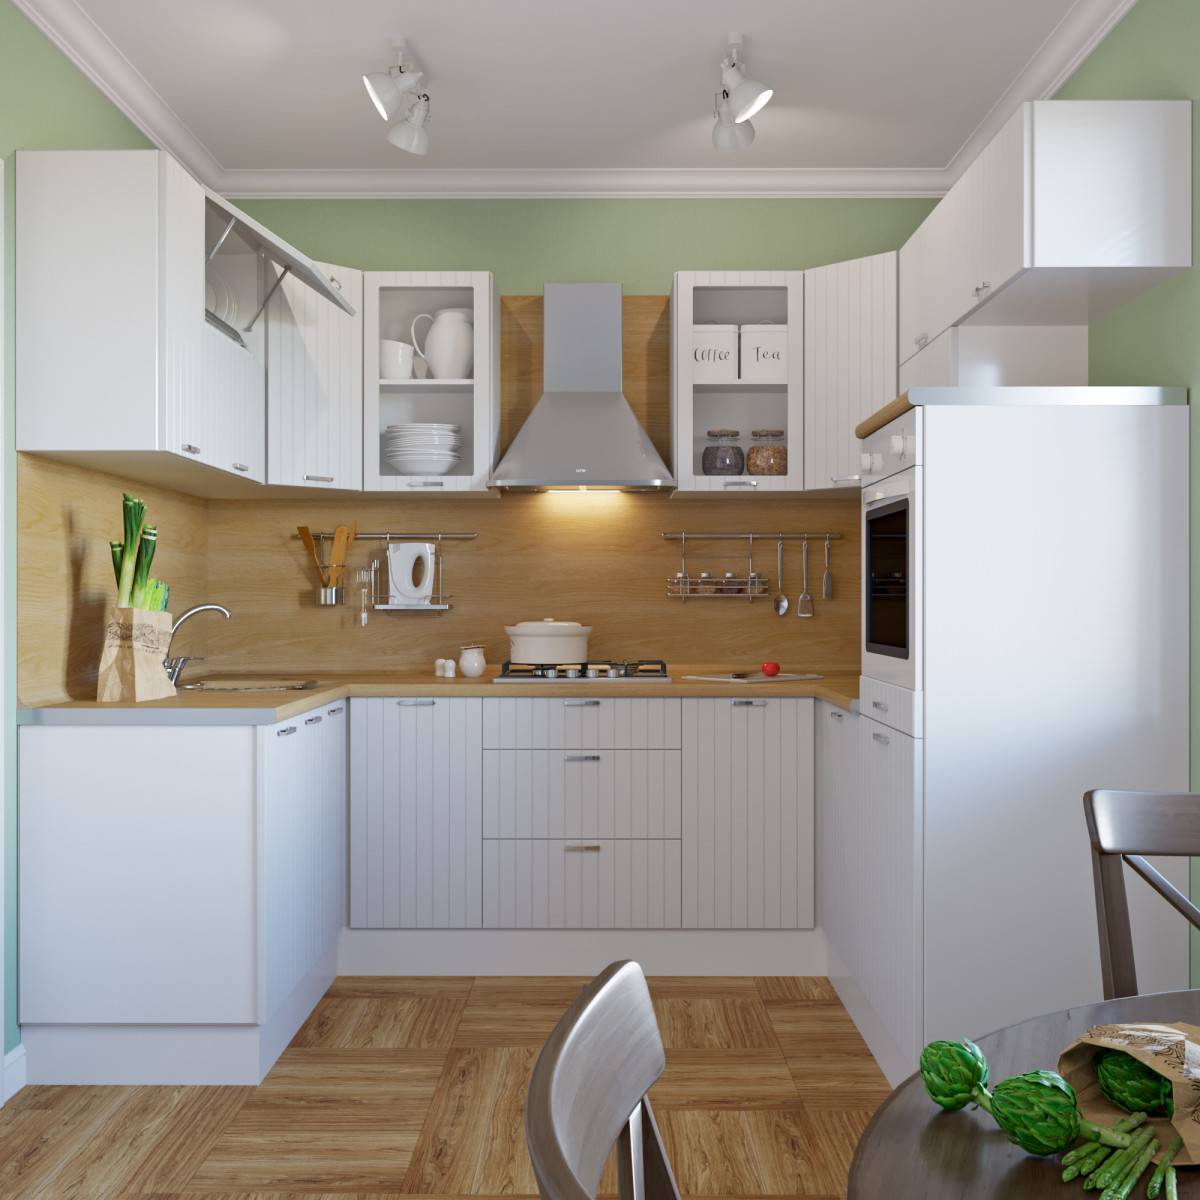 Кухни в леруа мерлен: каталог 2022 года, отзывы и фото модульных, а так же готовых решений с красивым дизайном фасада (140 фото)